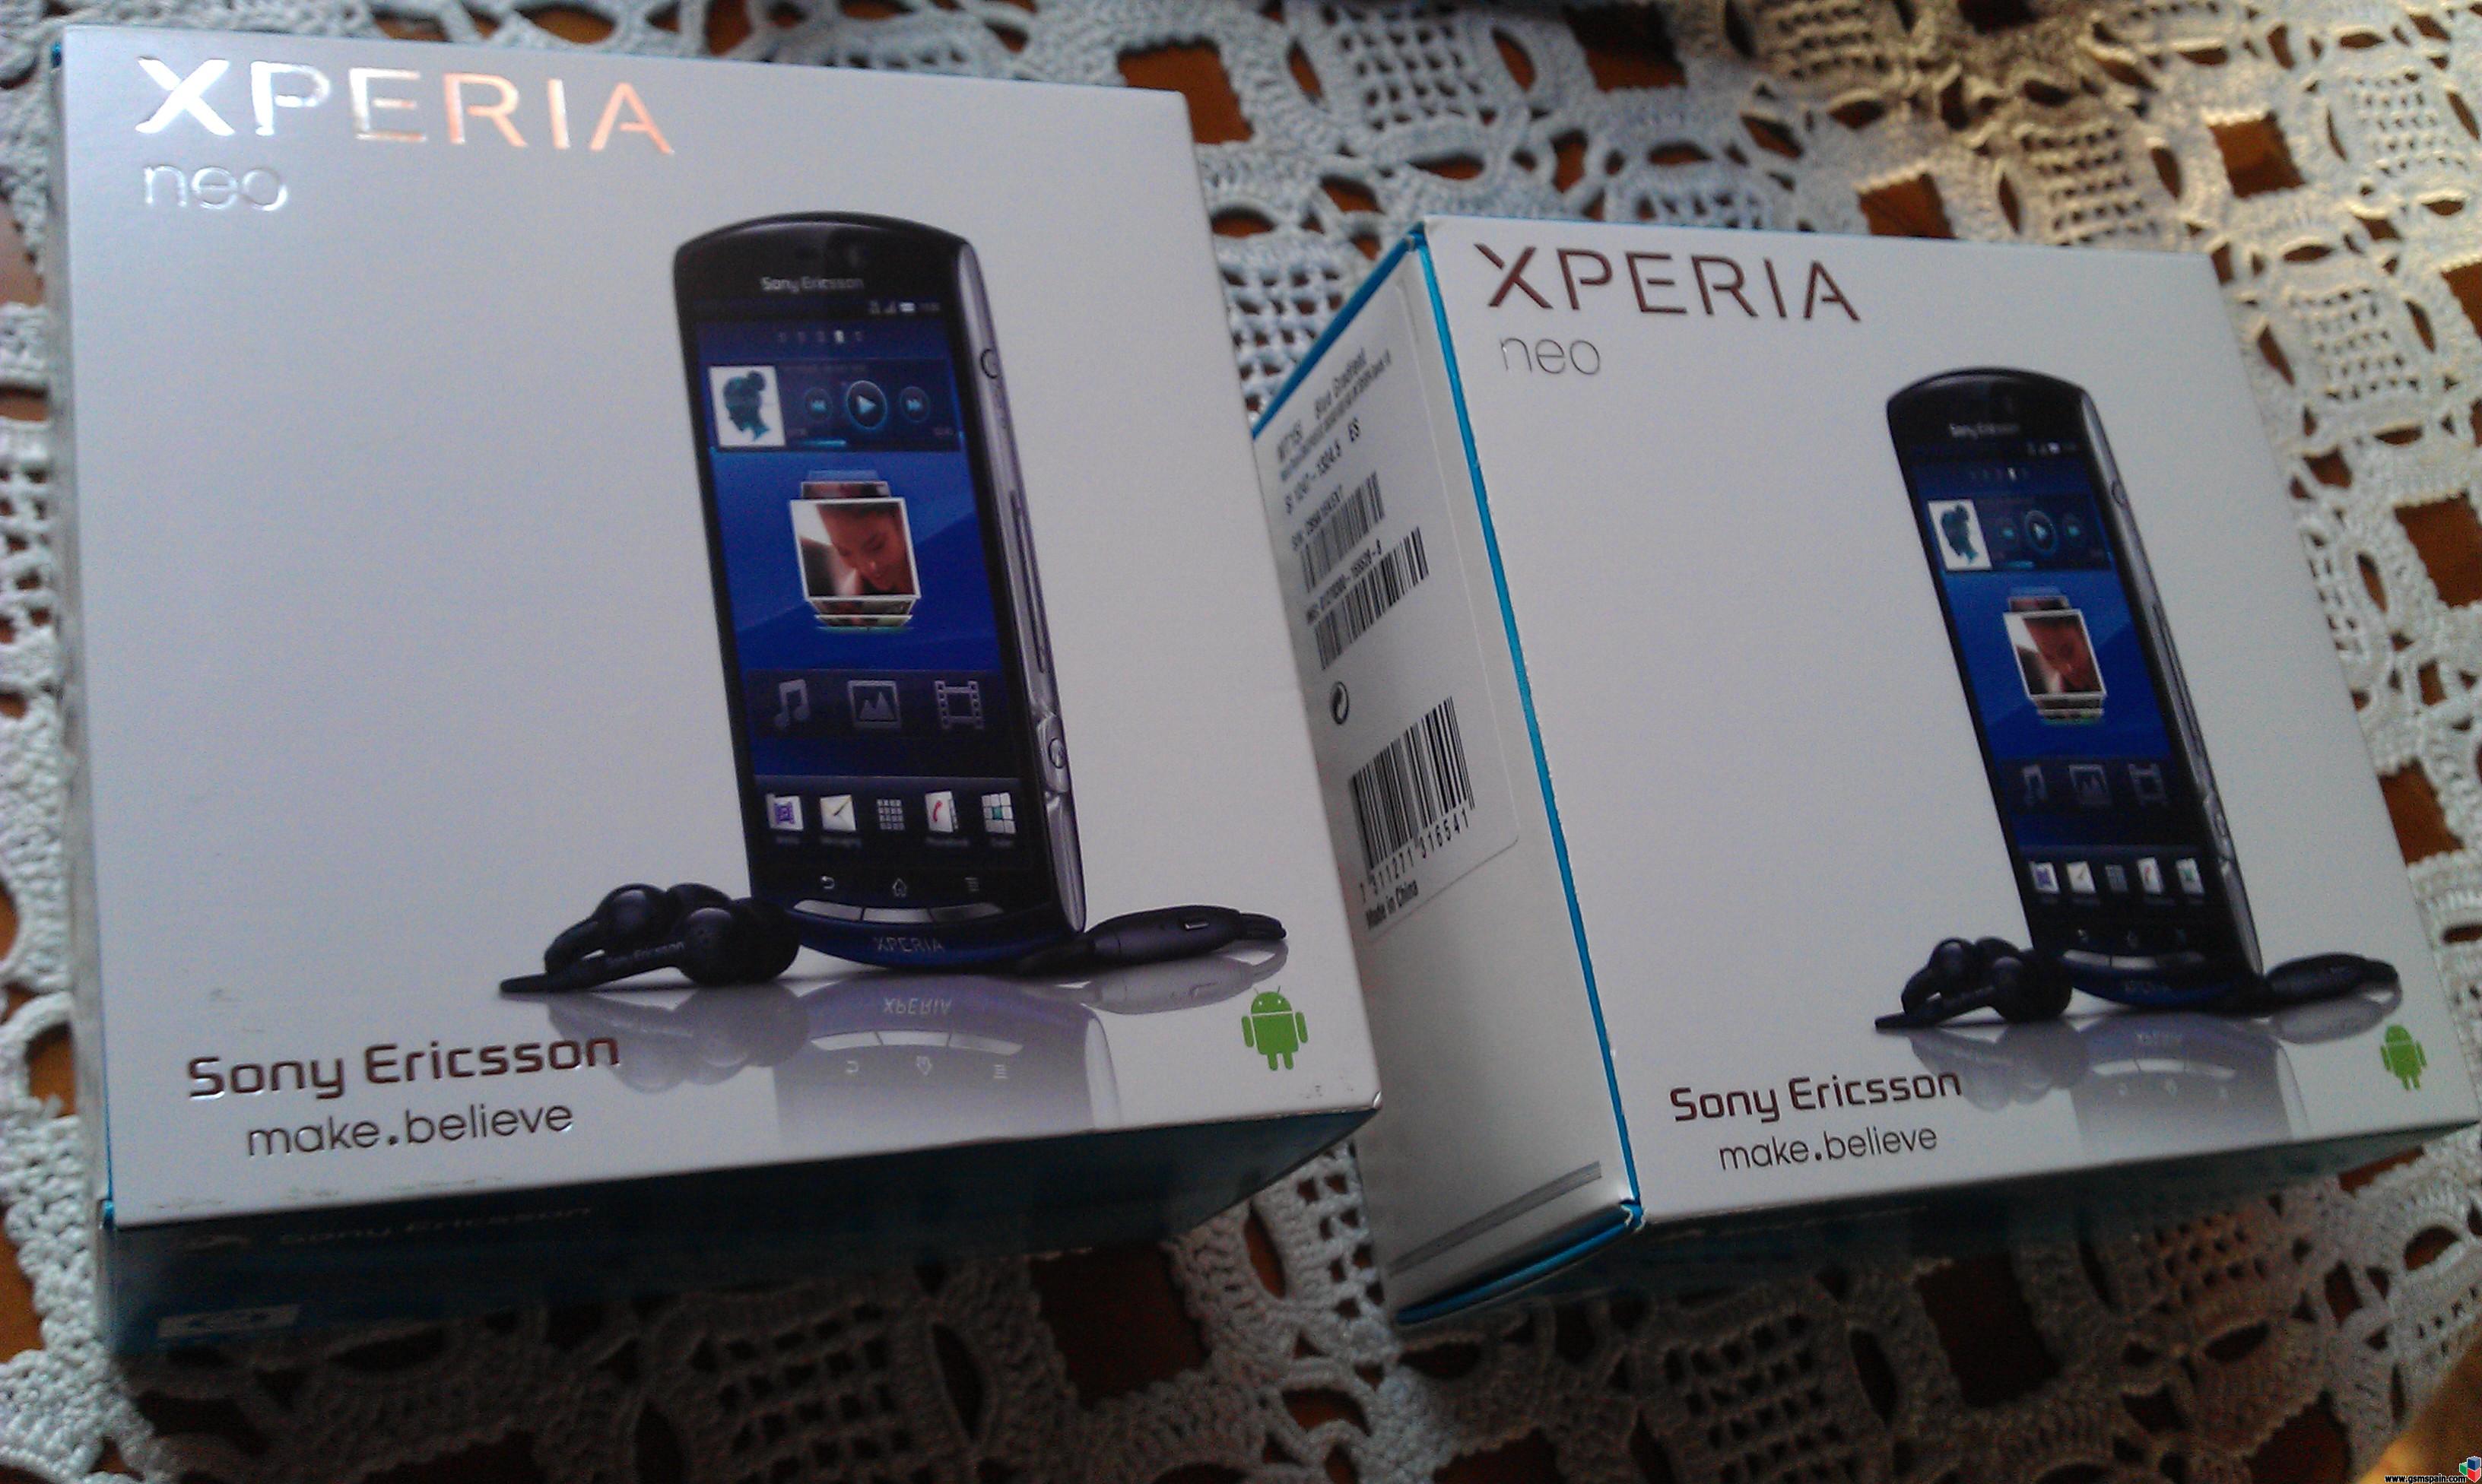 [VENDO] Sony Ericsson Xperia Neo nuevos a estrenar con factura.